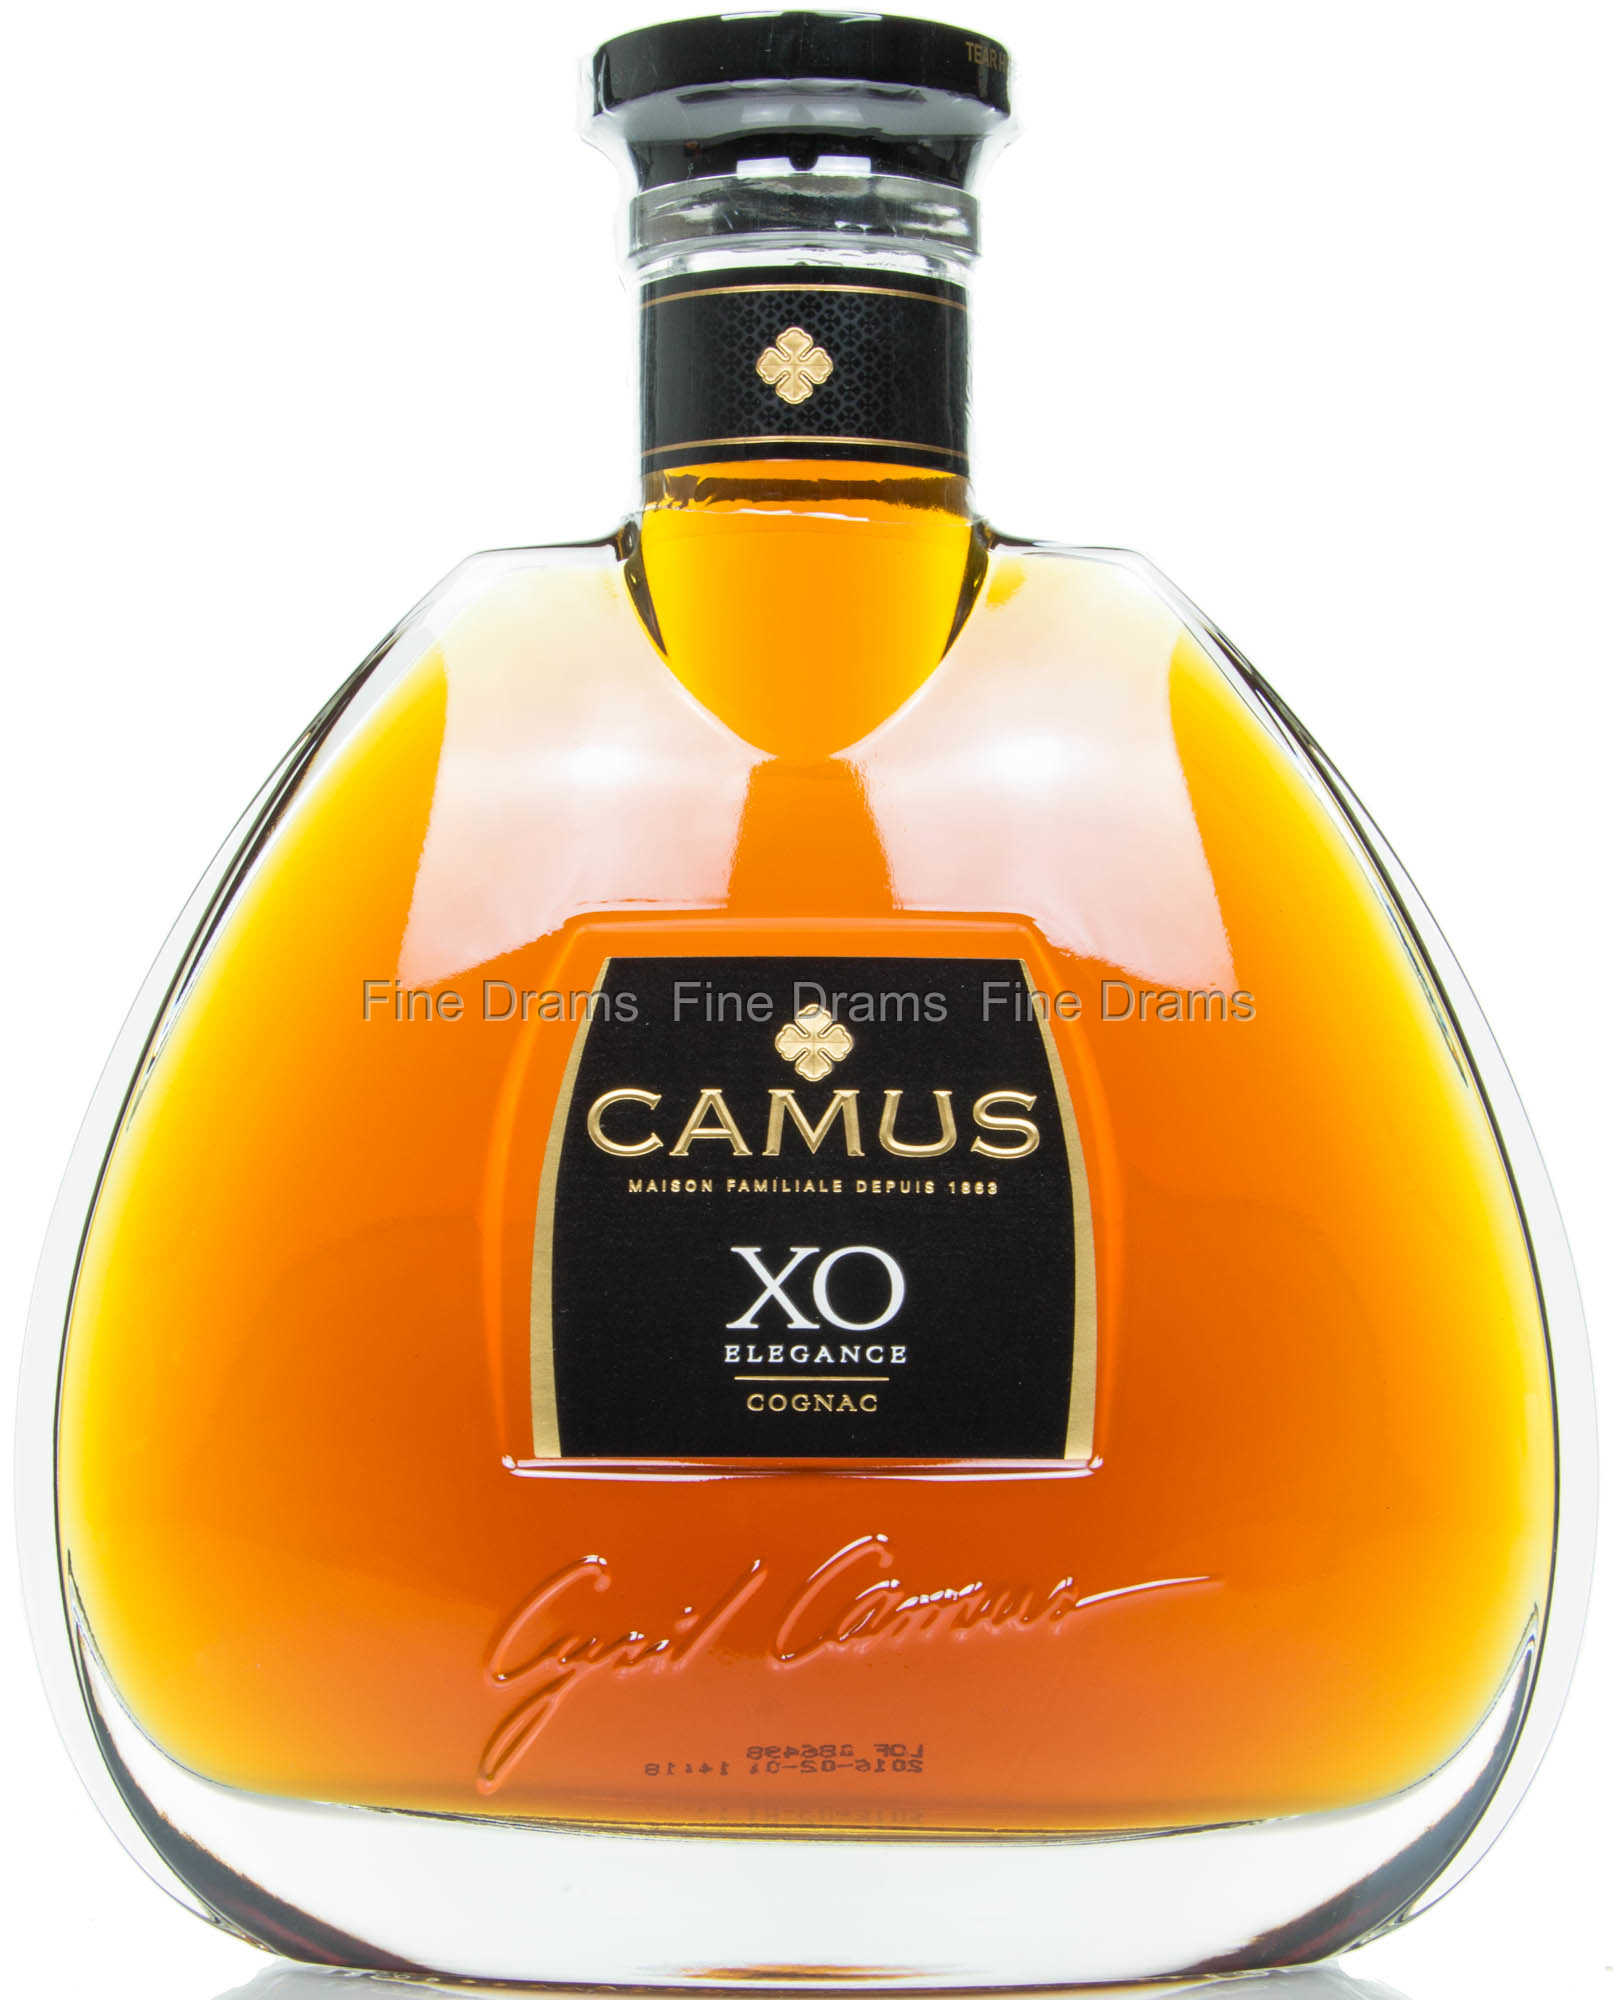 Camus Elegance XO Cognac